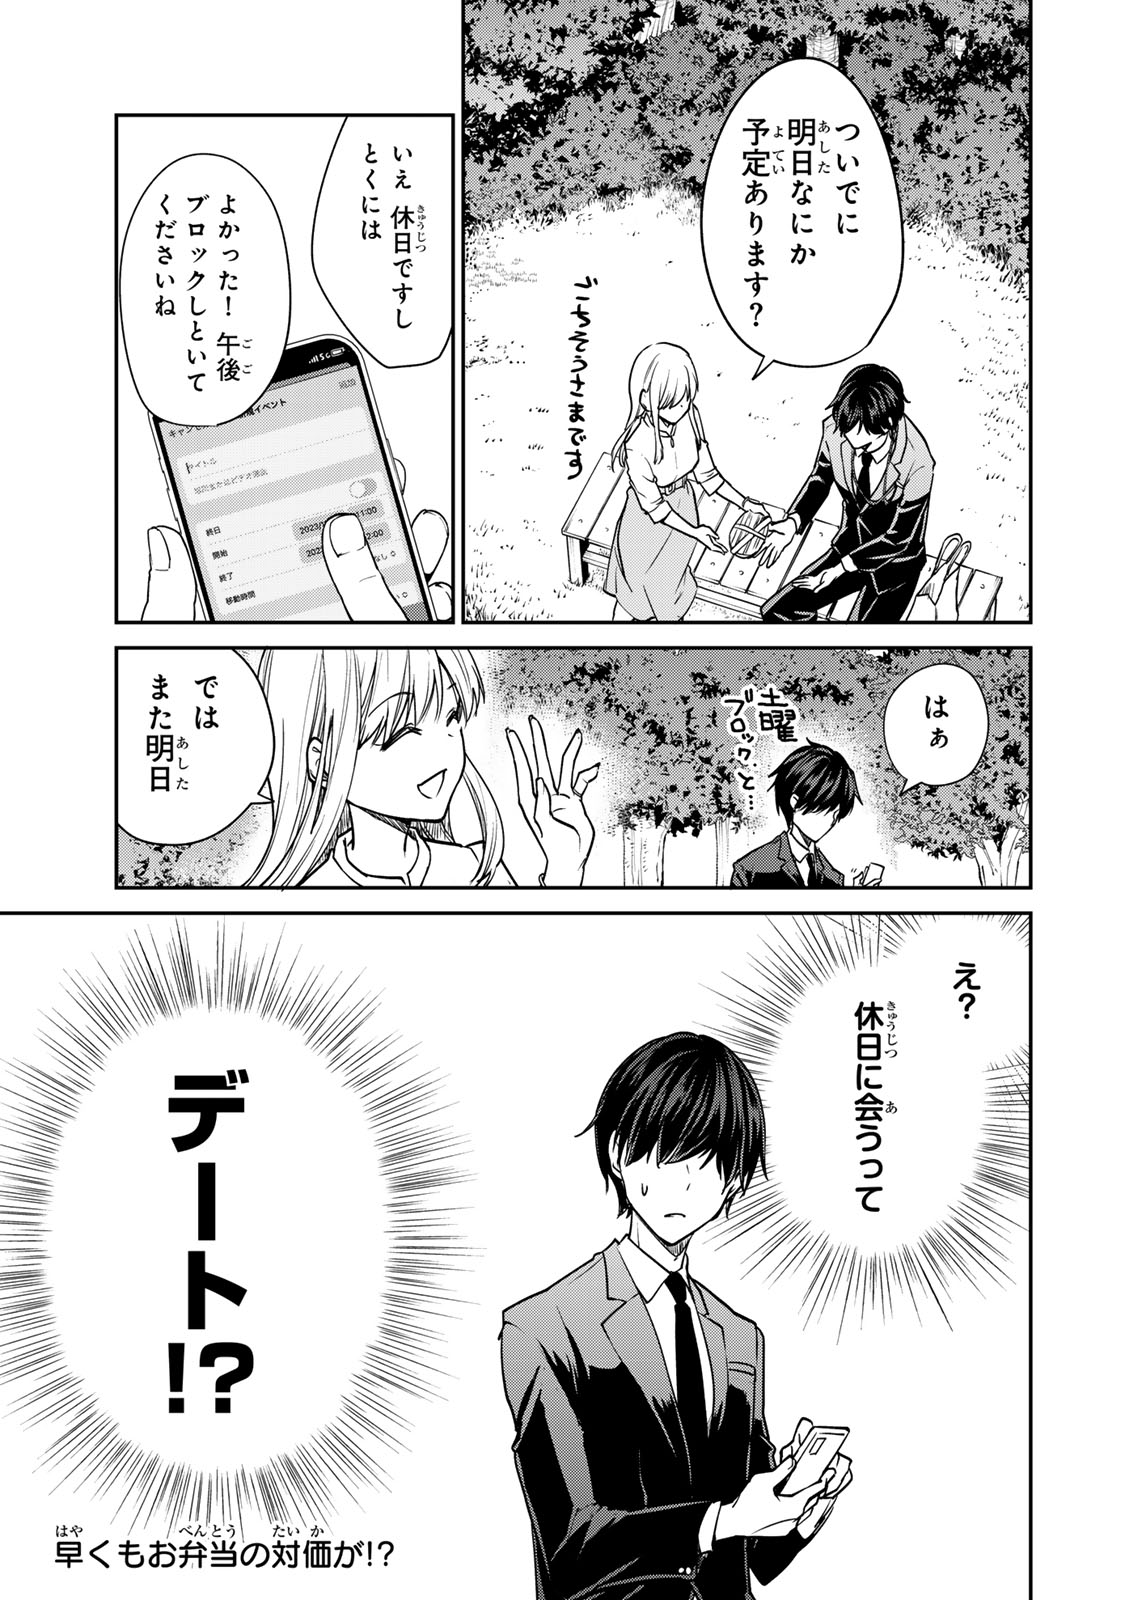 Kyou no Ohiru wa Nan desu ka? - Chapter 3 - Page 21